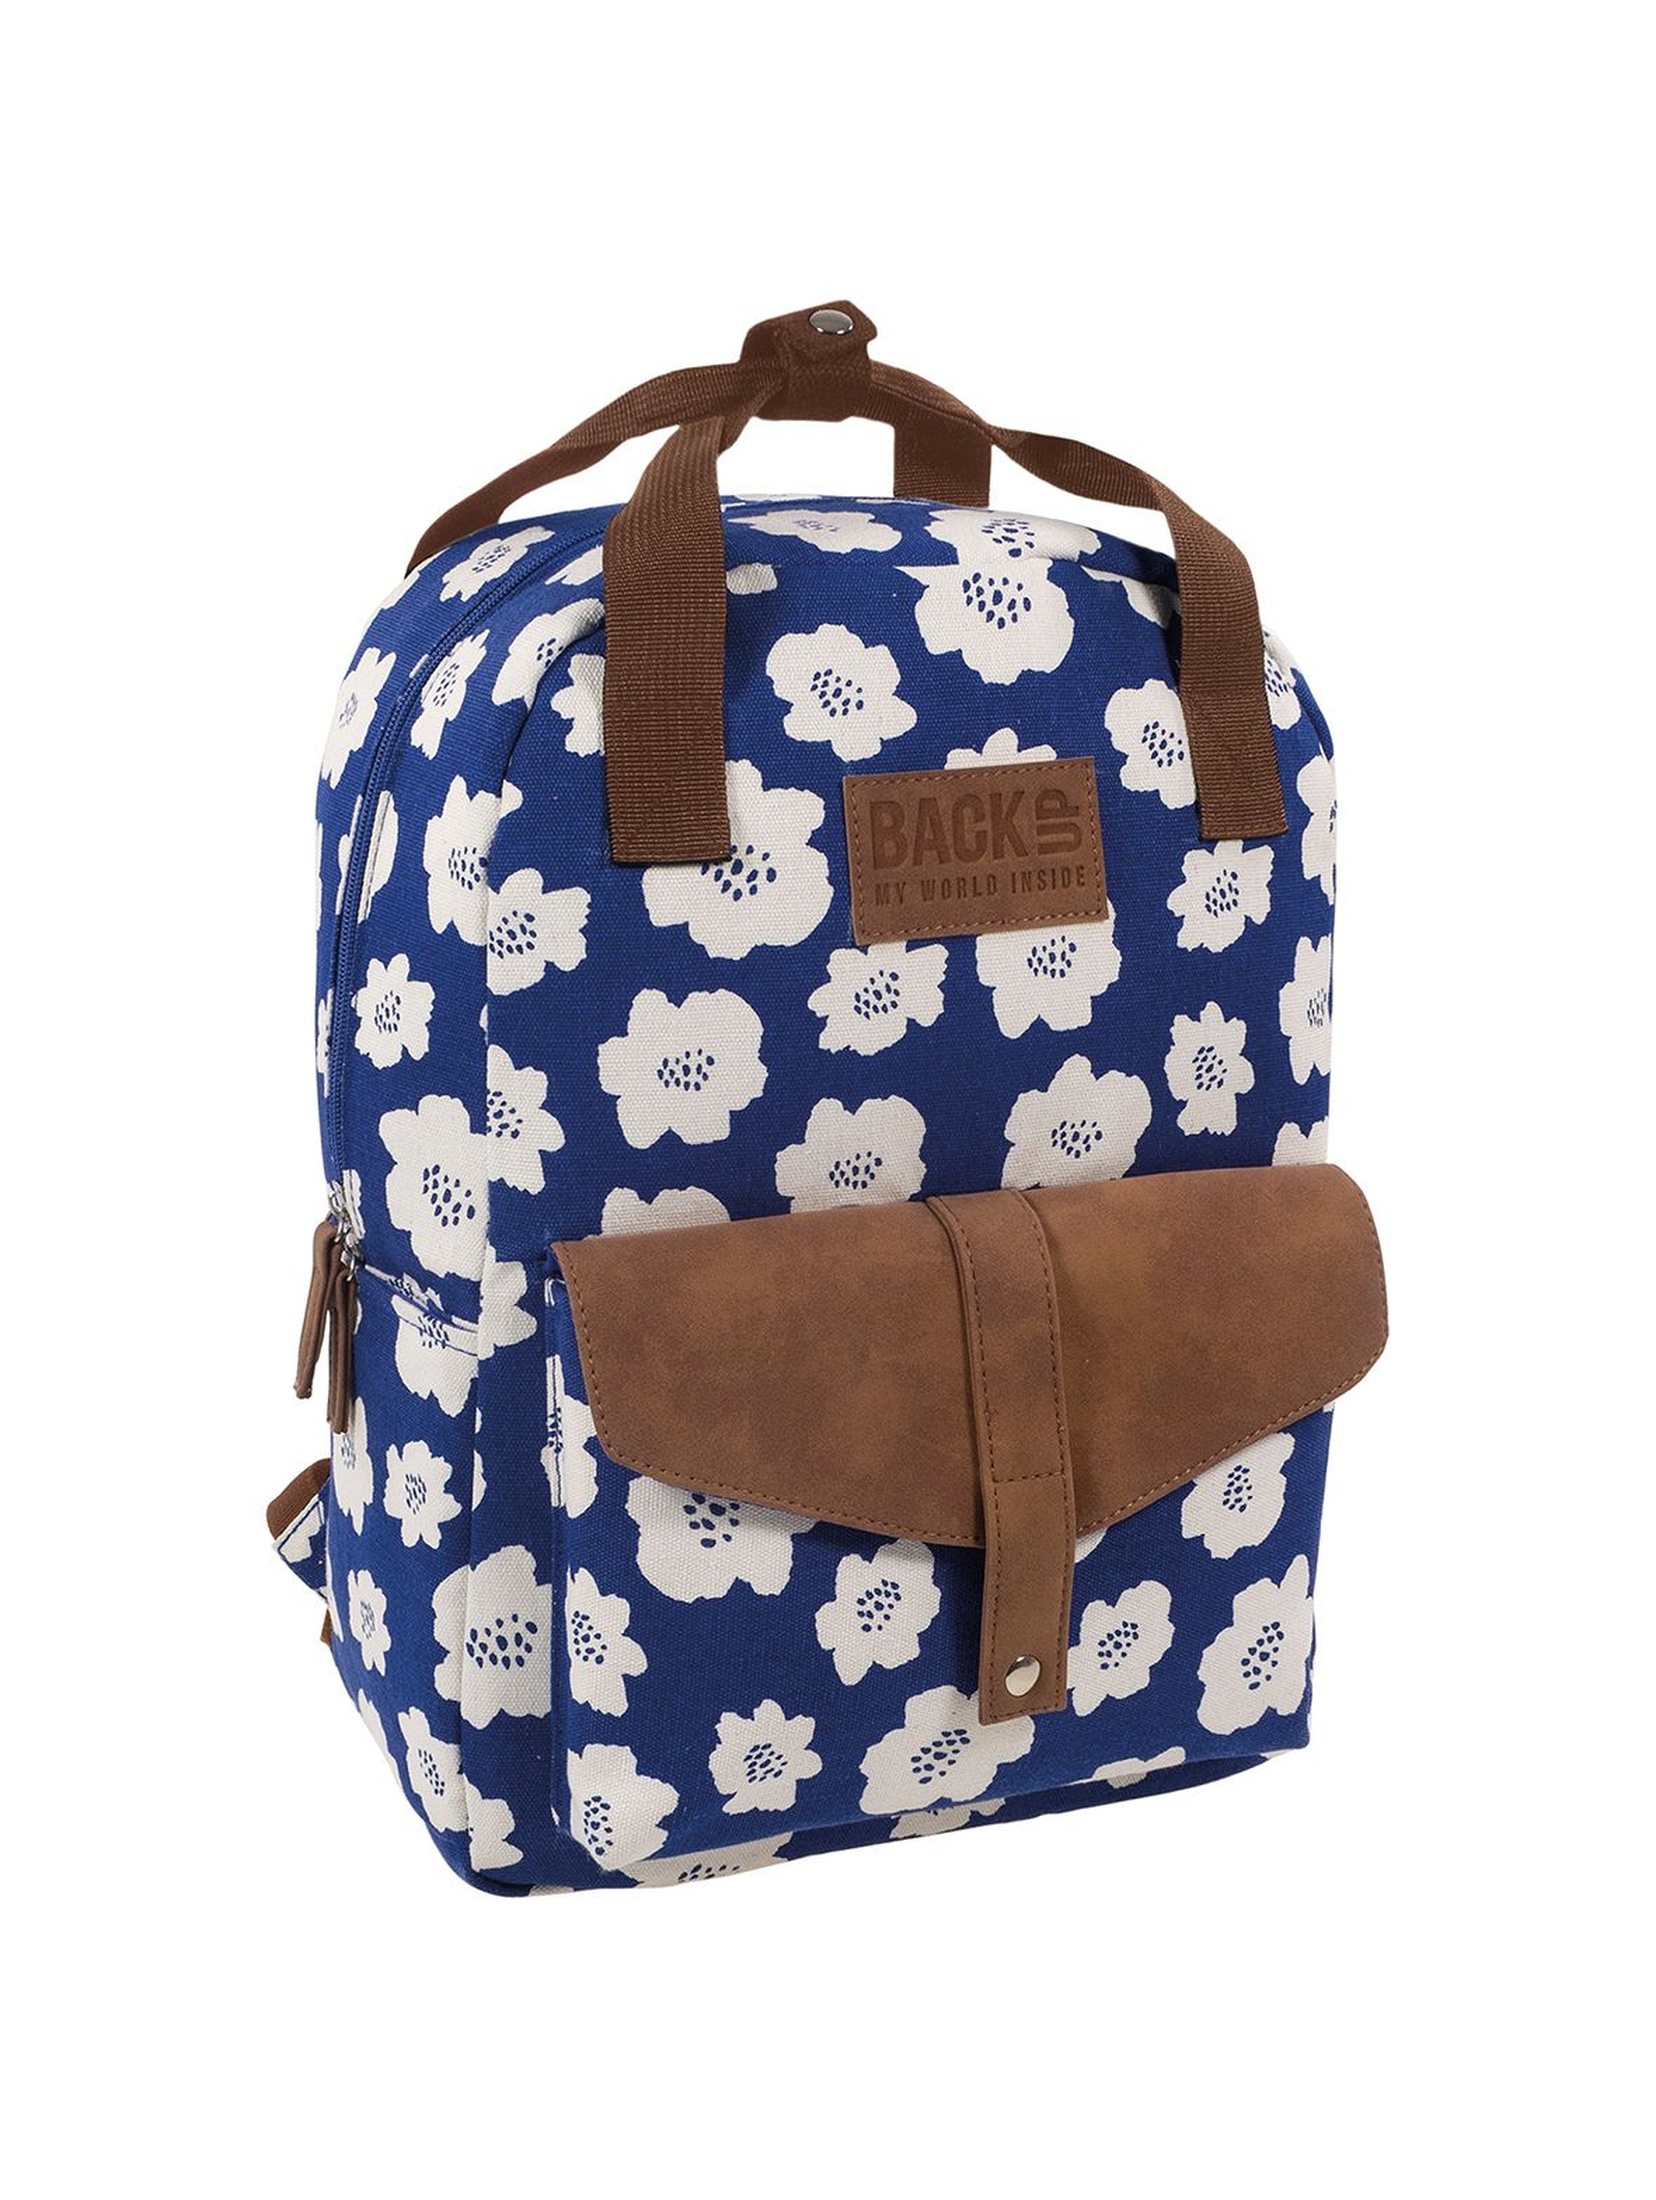 Plecak CANVAS BACKUP - niebieski w kwiaty